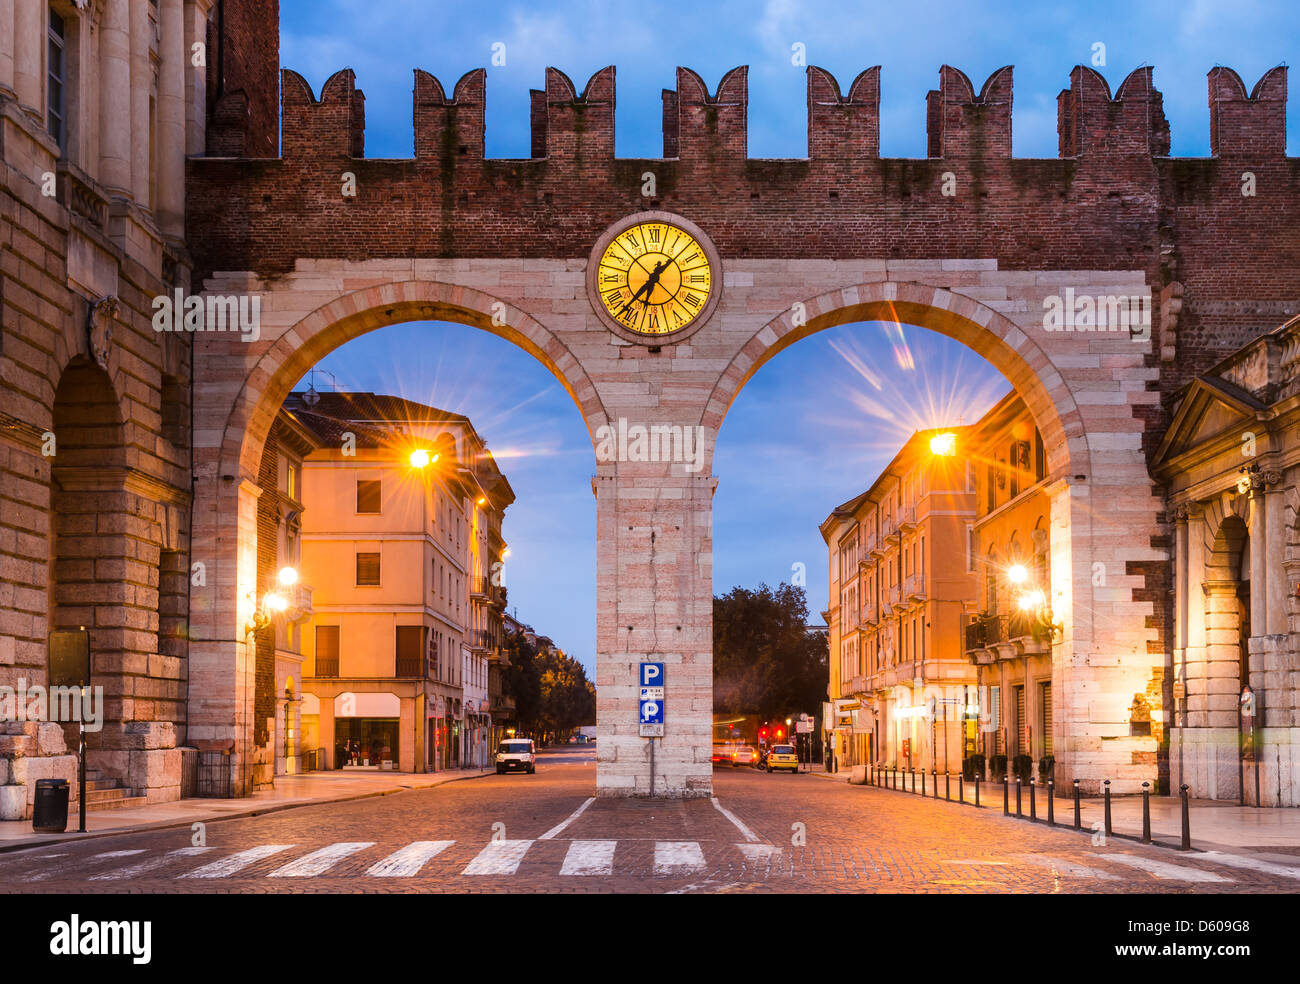 Portoni della Bra, l'une des entrée de la ville historique médiévale Vérone, Italie du nord Banque D'Images